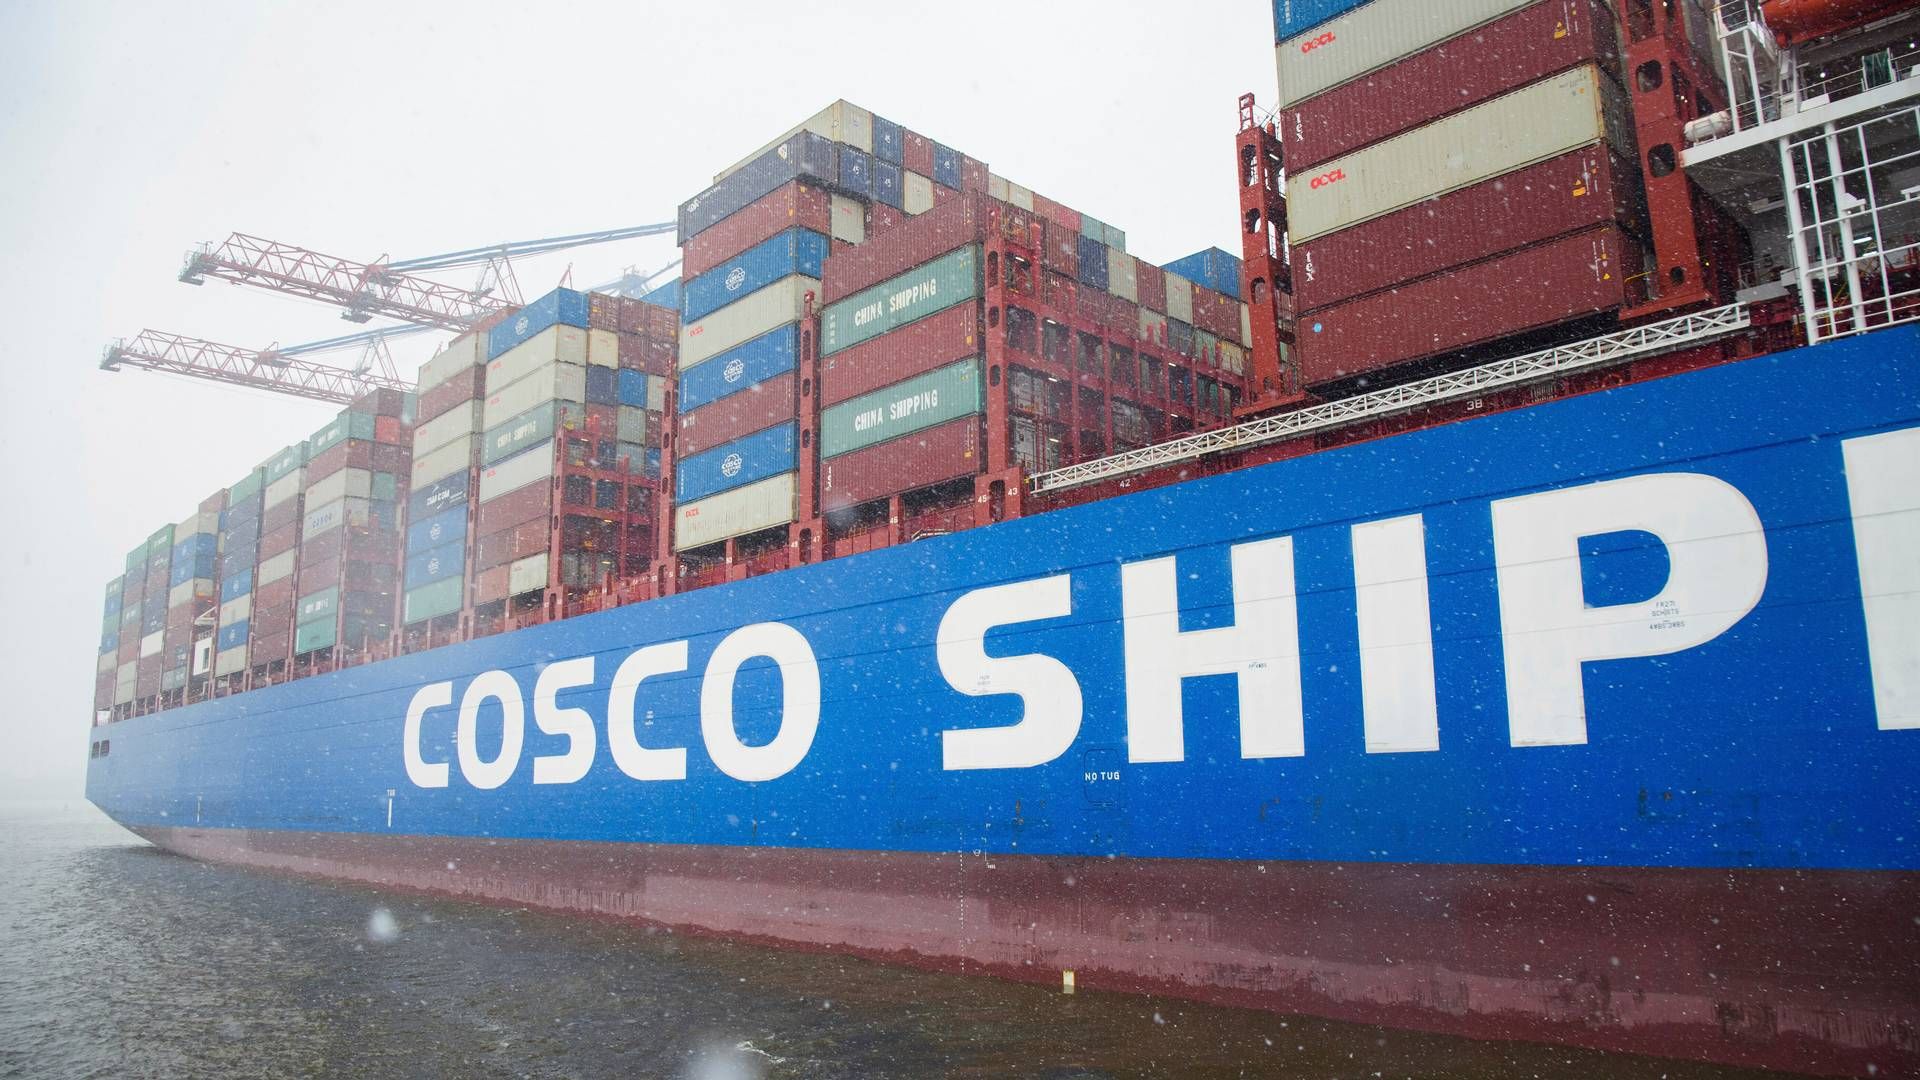 EU ETS kommer til at påvirke omkring 4000 skibe, der sejler under asiatisk flag. Ejerne er bl.a. COSCO, Anglo Eastern Ship Management og HMM. | Foto: Gregor Fischer/AP/Ritzau Scanpix